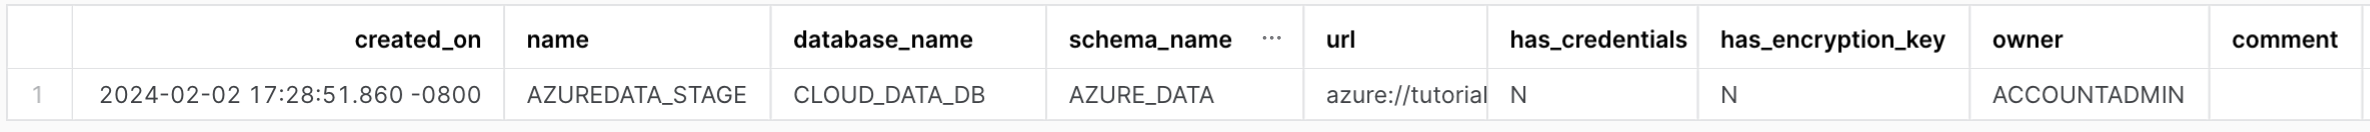 Saída do comando SHOW STAGES, com as seguintes colunas: created_on, name, database_name, schema_name, url.